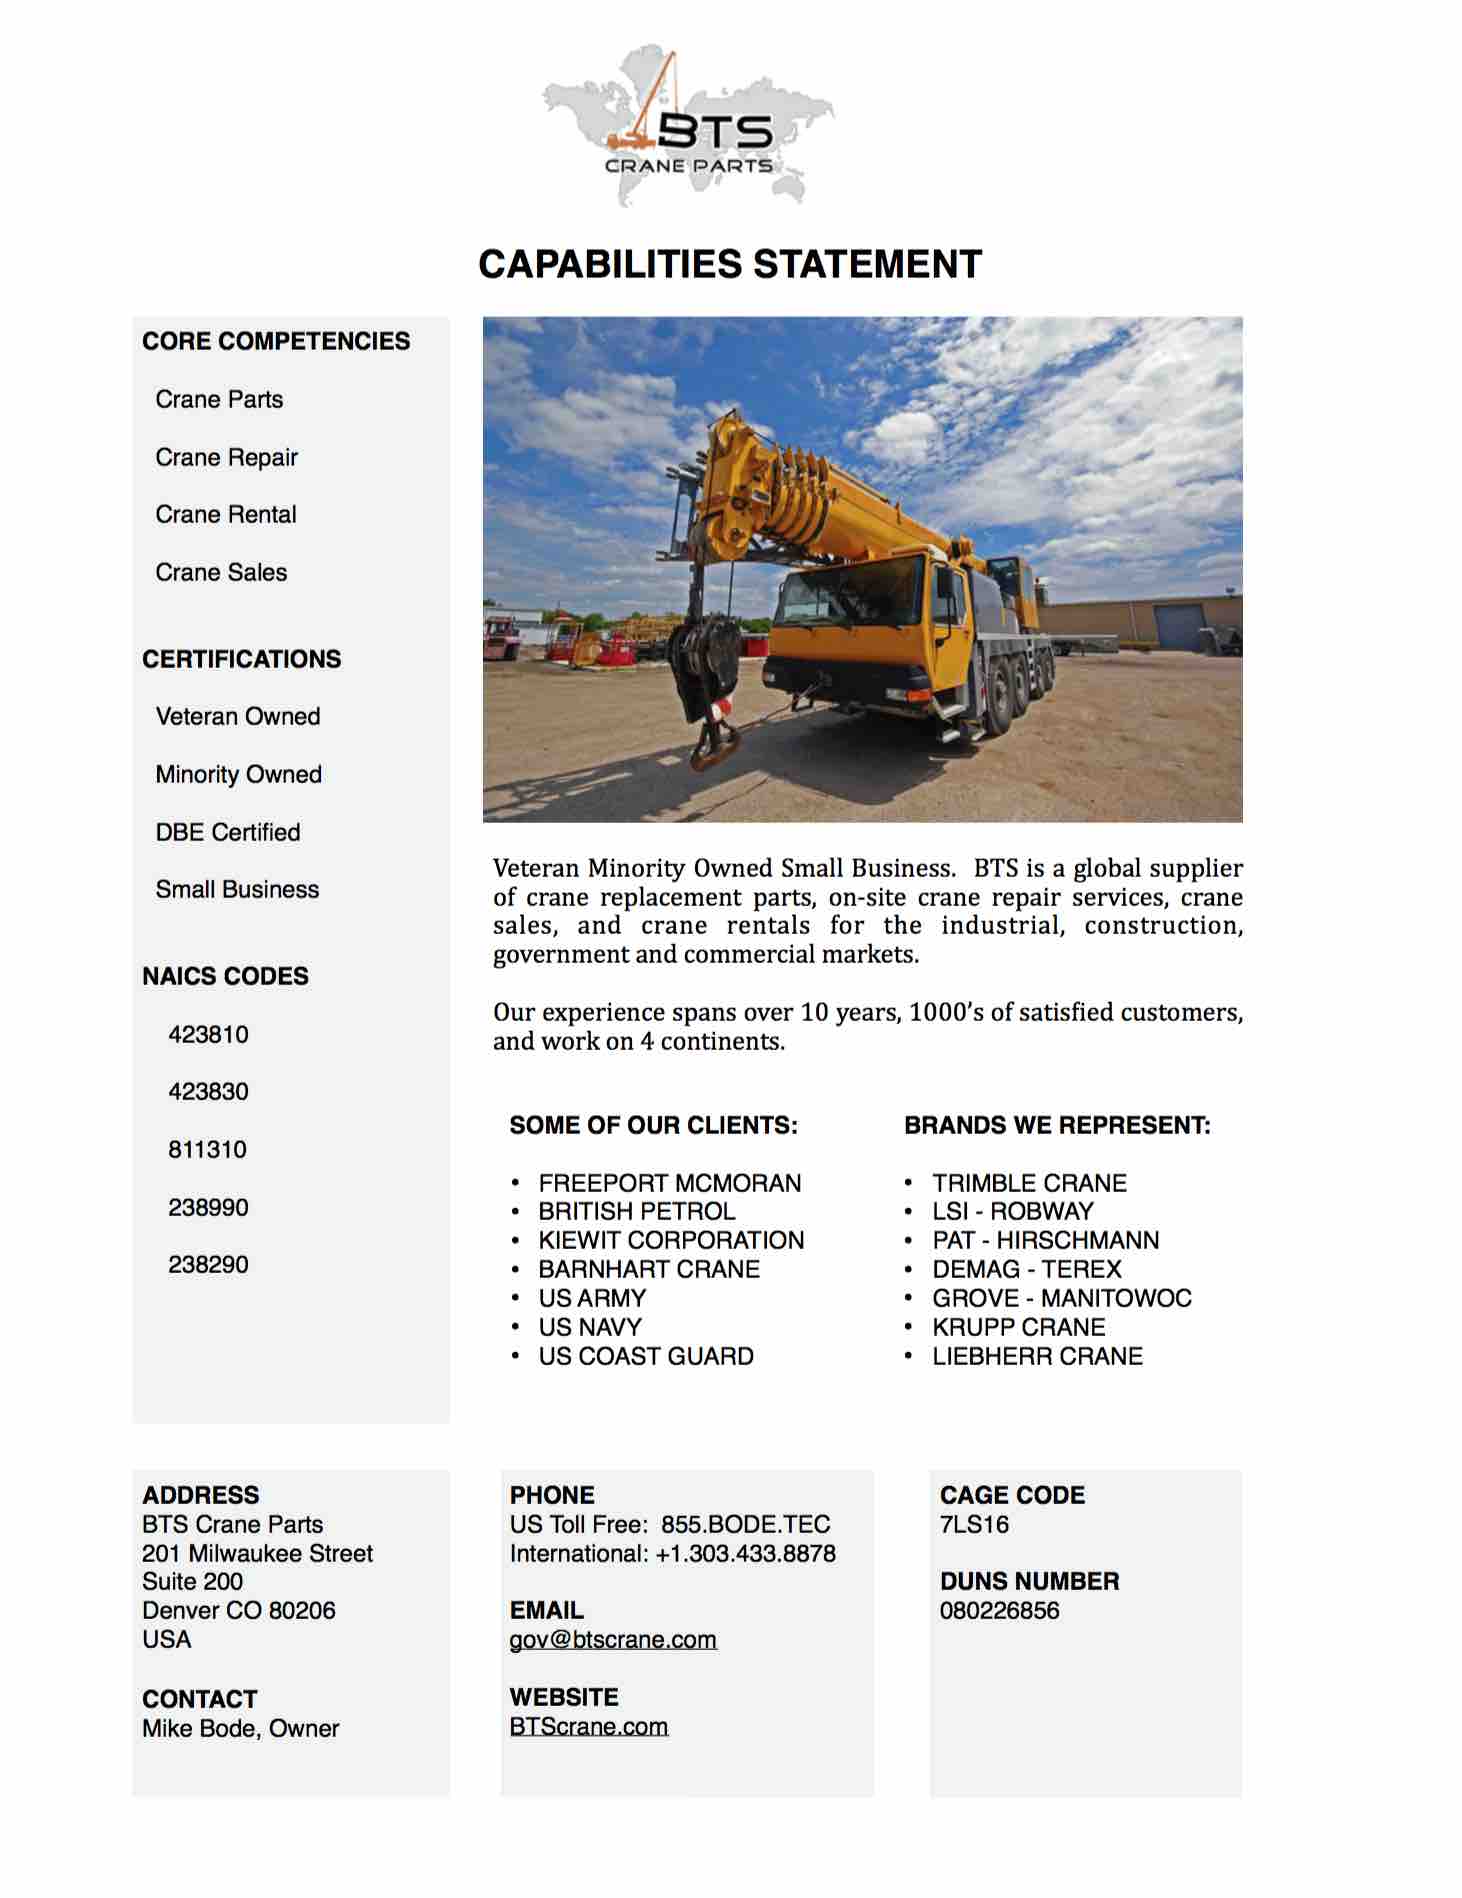 BTS Capabilities Statement PDF